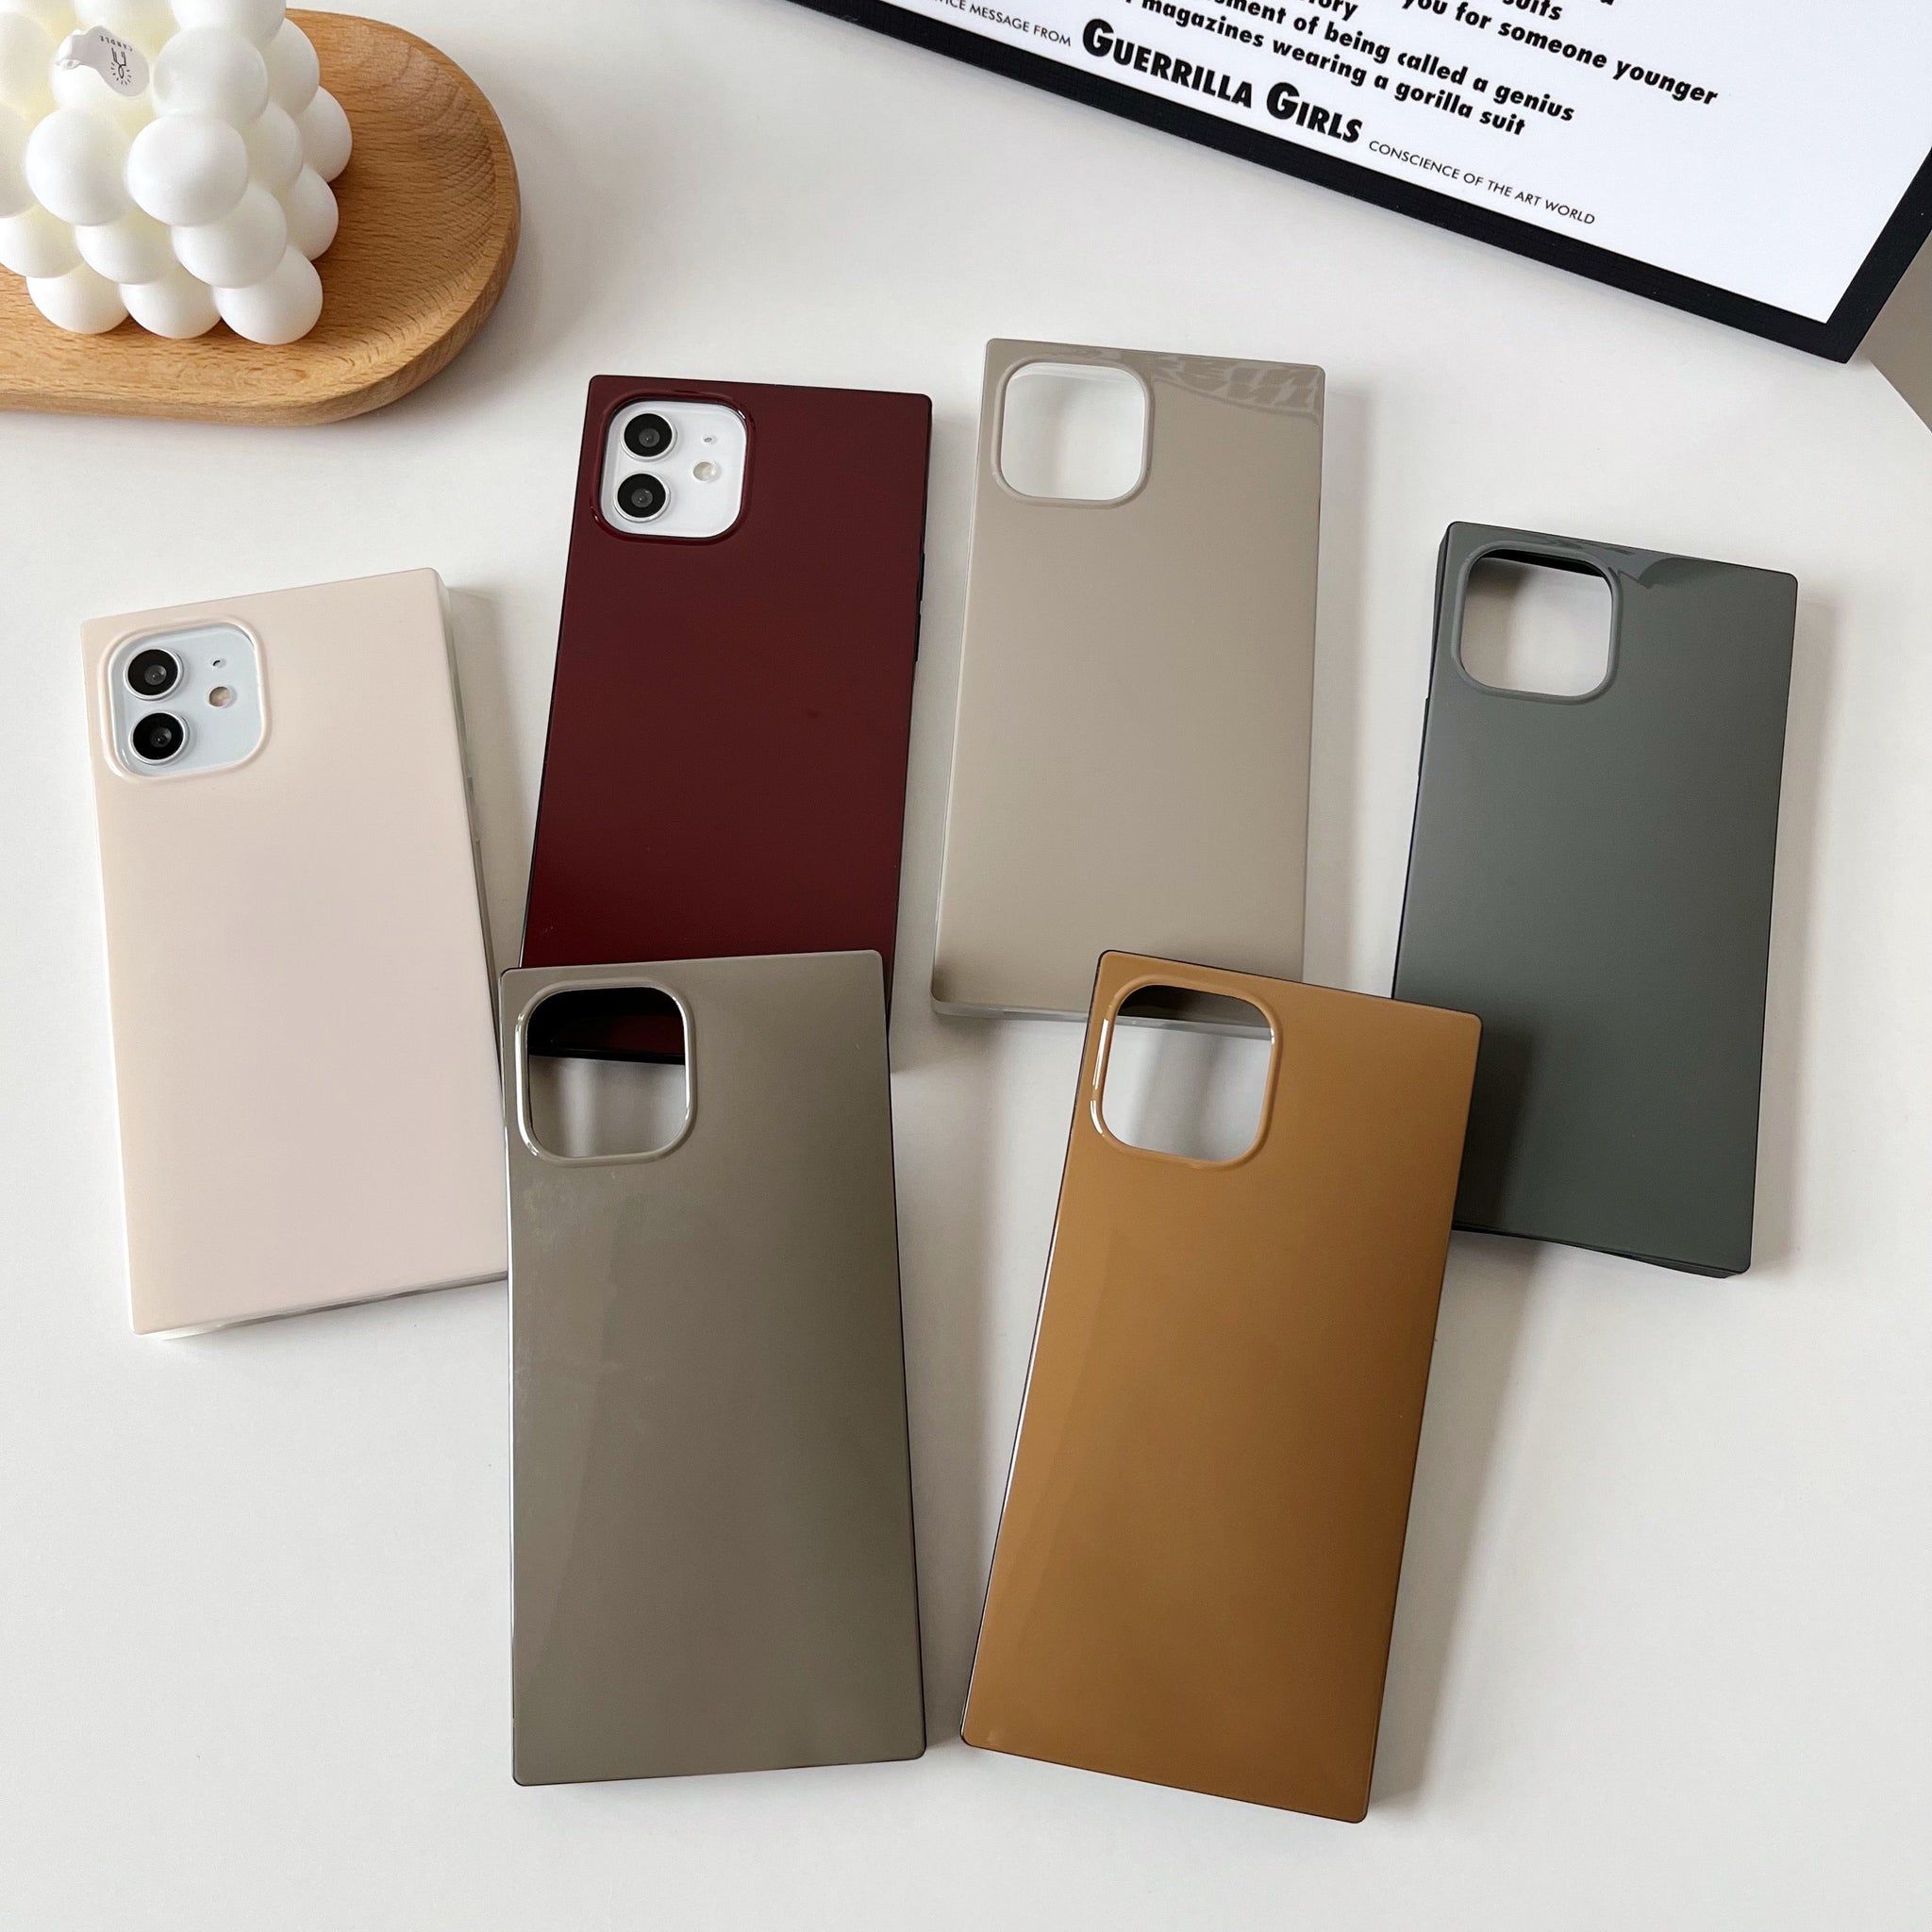 iPhone 11 Pro Case Square Neutral Plain Color (Asphalt Gray)